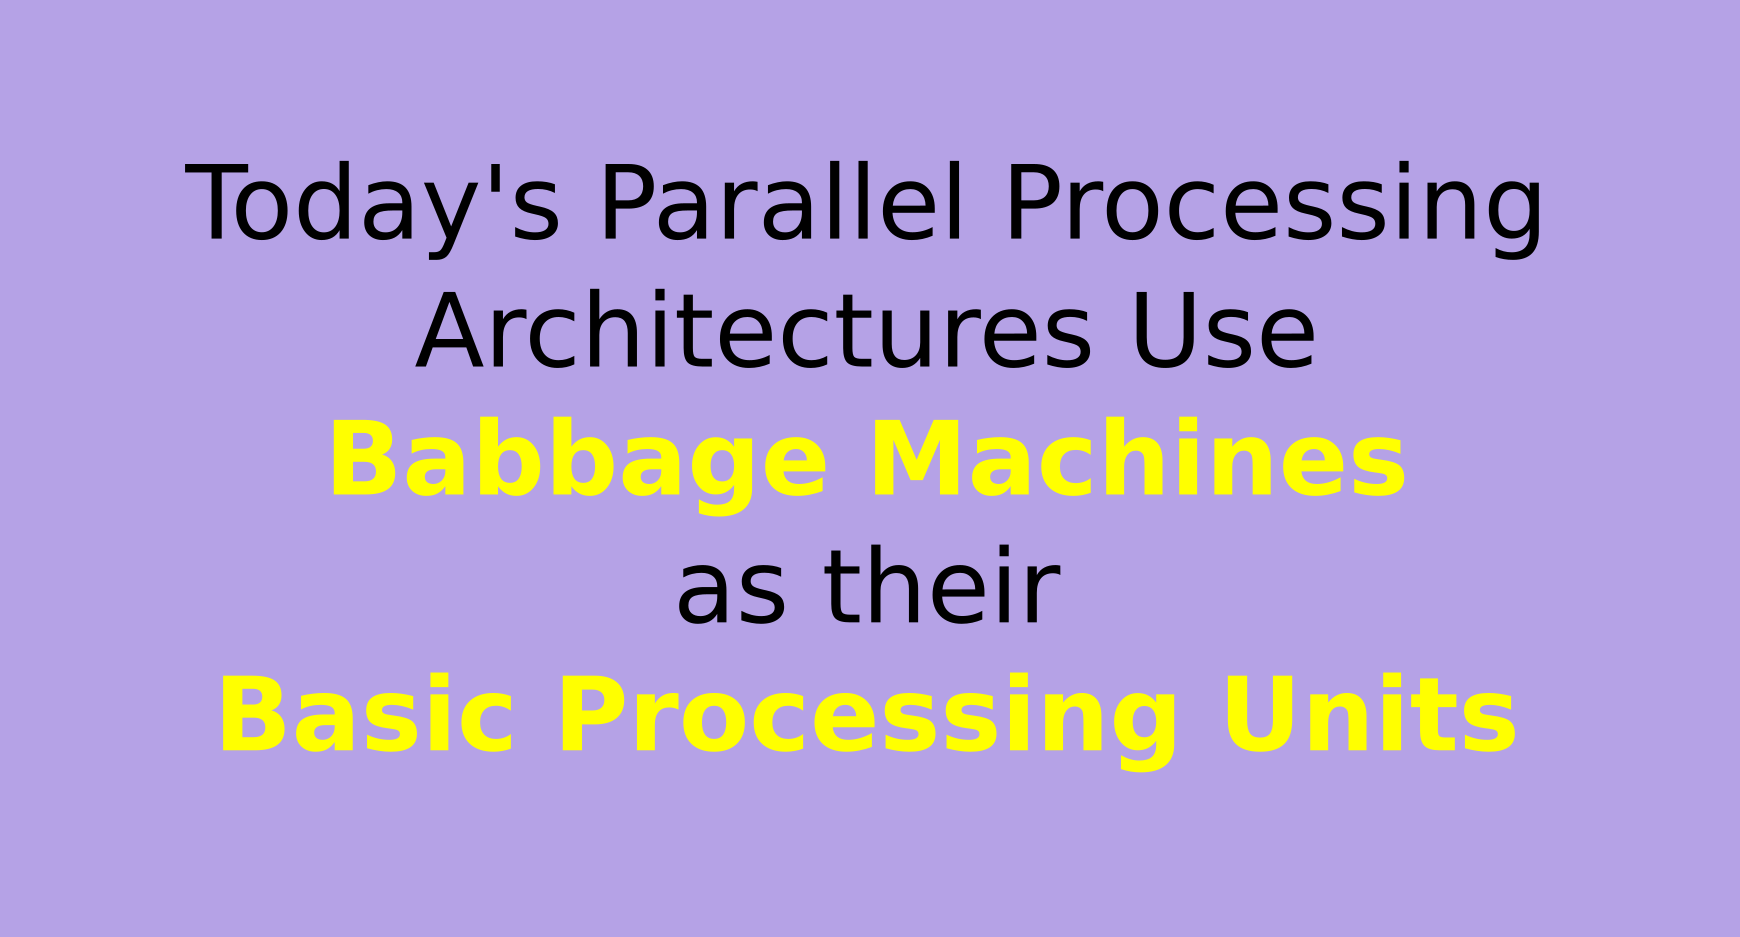 Babbage ArchitectureLast Slide